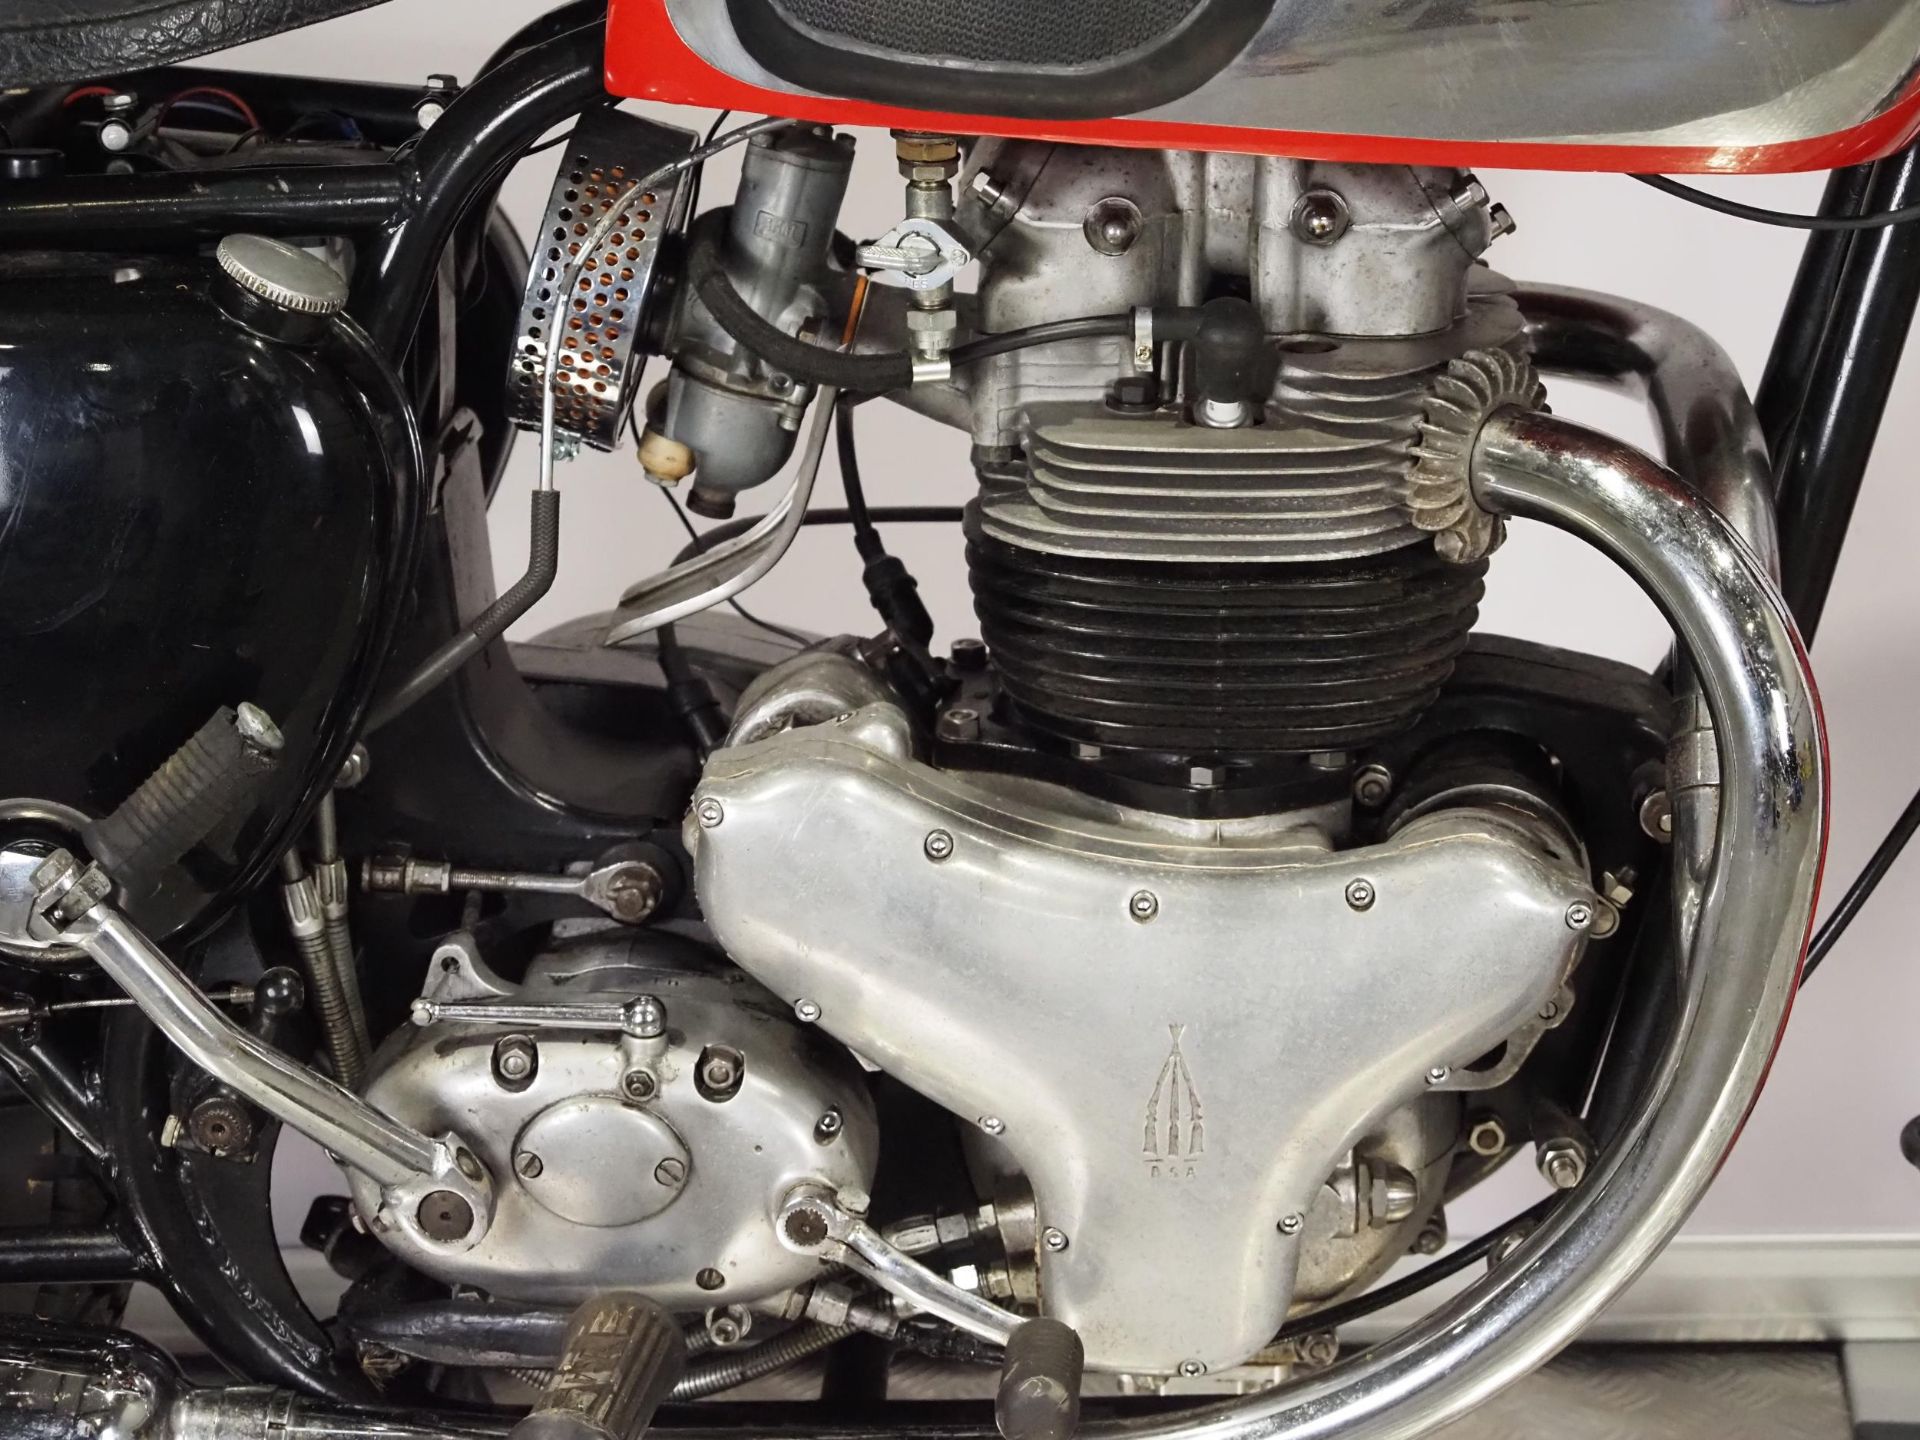 BSA A10 Super Rocket motorcycle. 1958. 650cc. Frame No. FA74240 Engine No. CA10R9521 Runs and rides. - Image 4 of 6